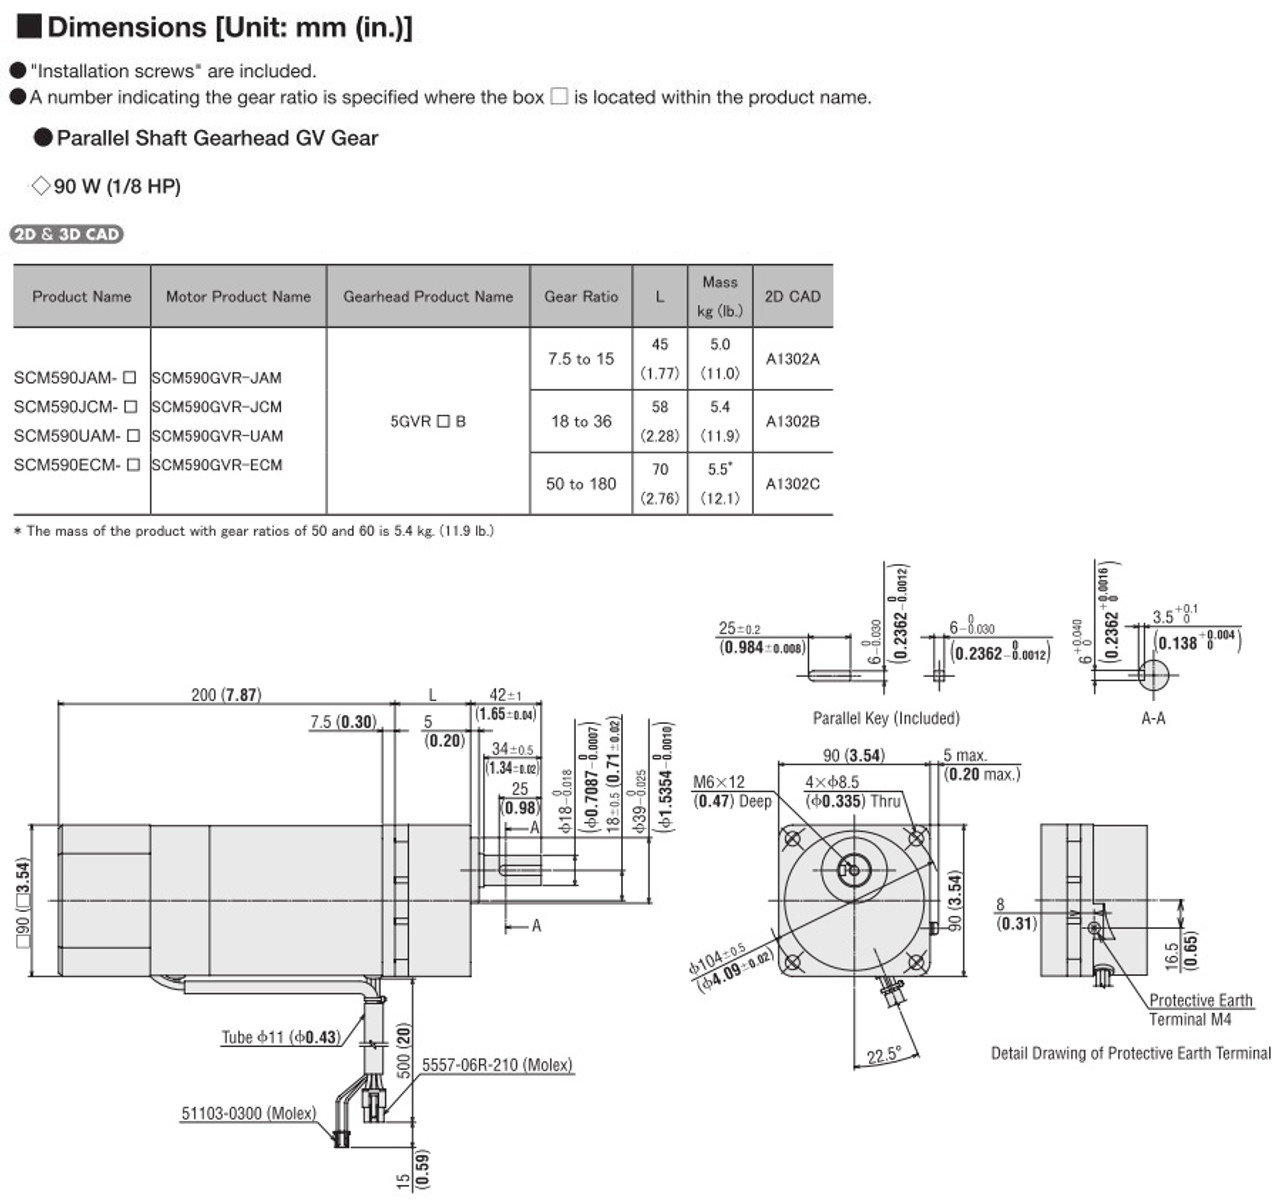 SCM590UAM-120 - Dimensions